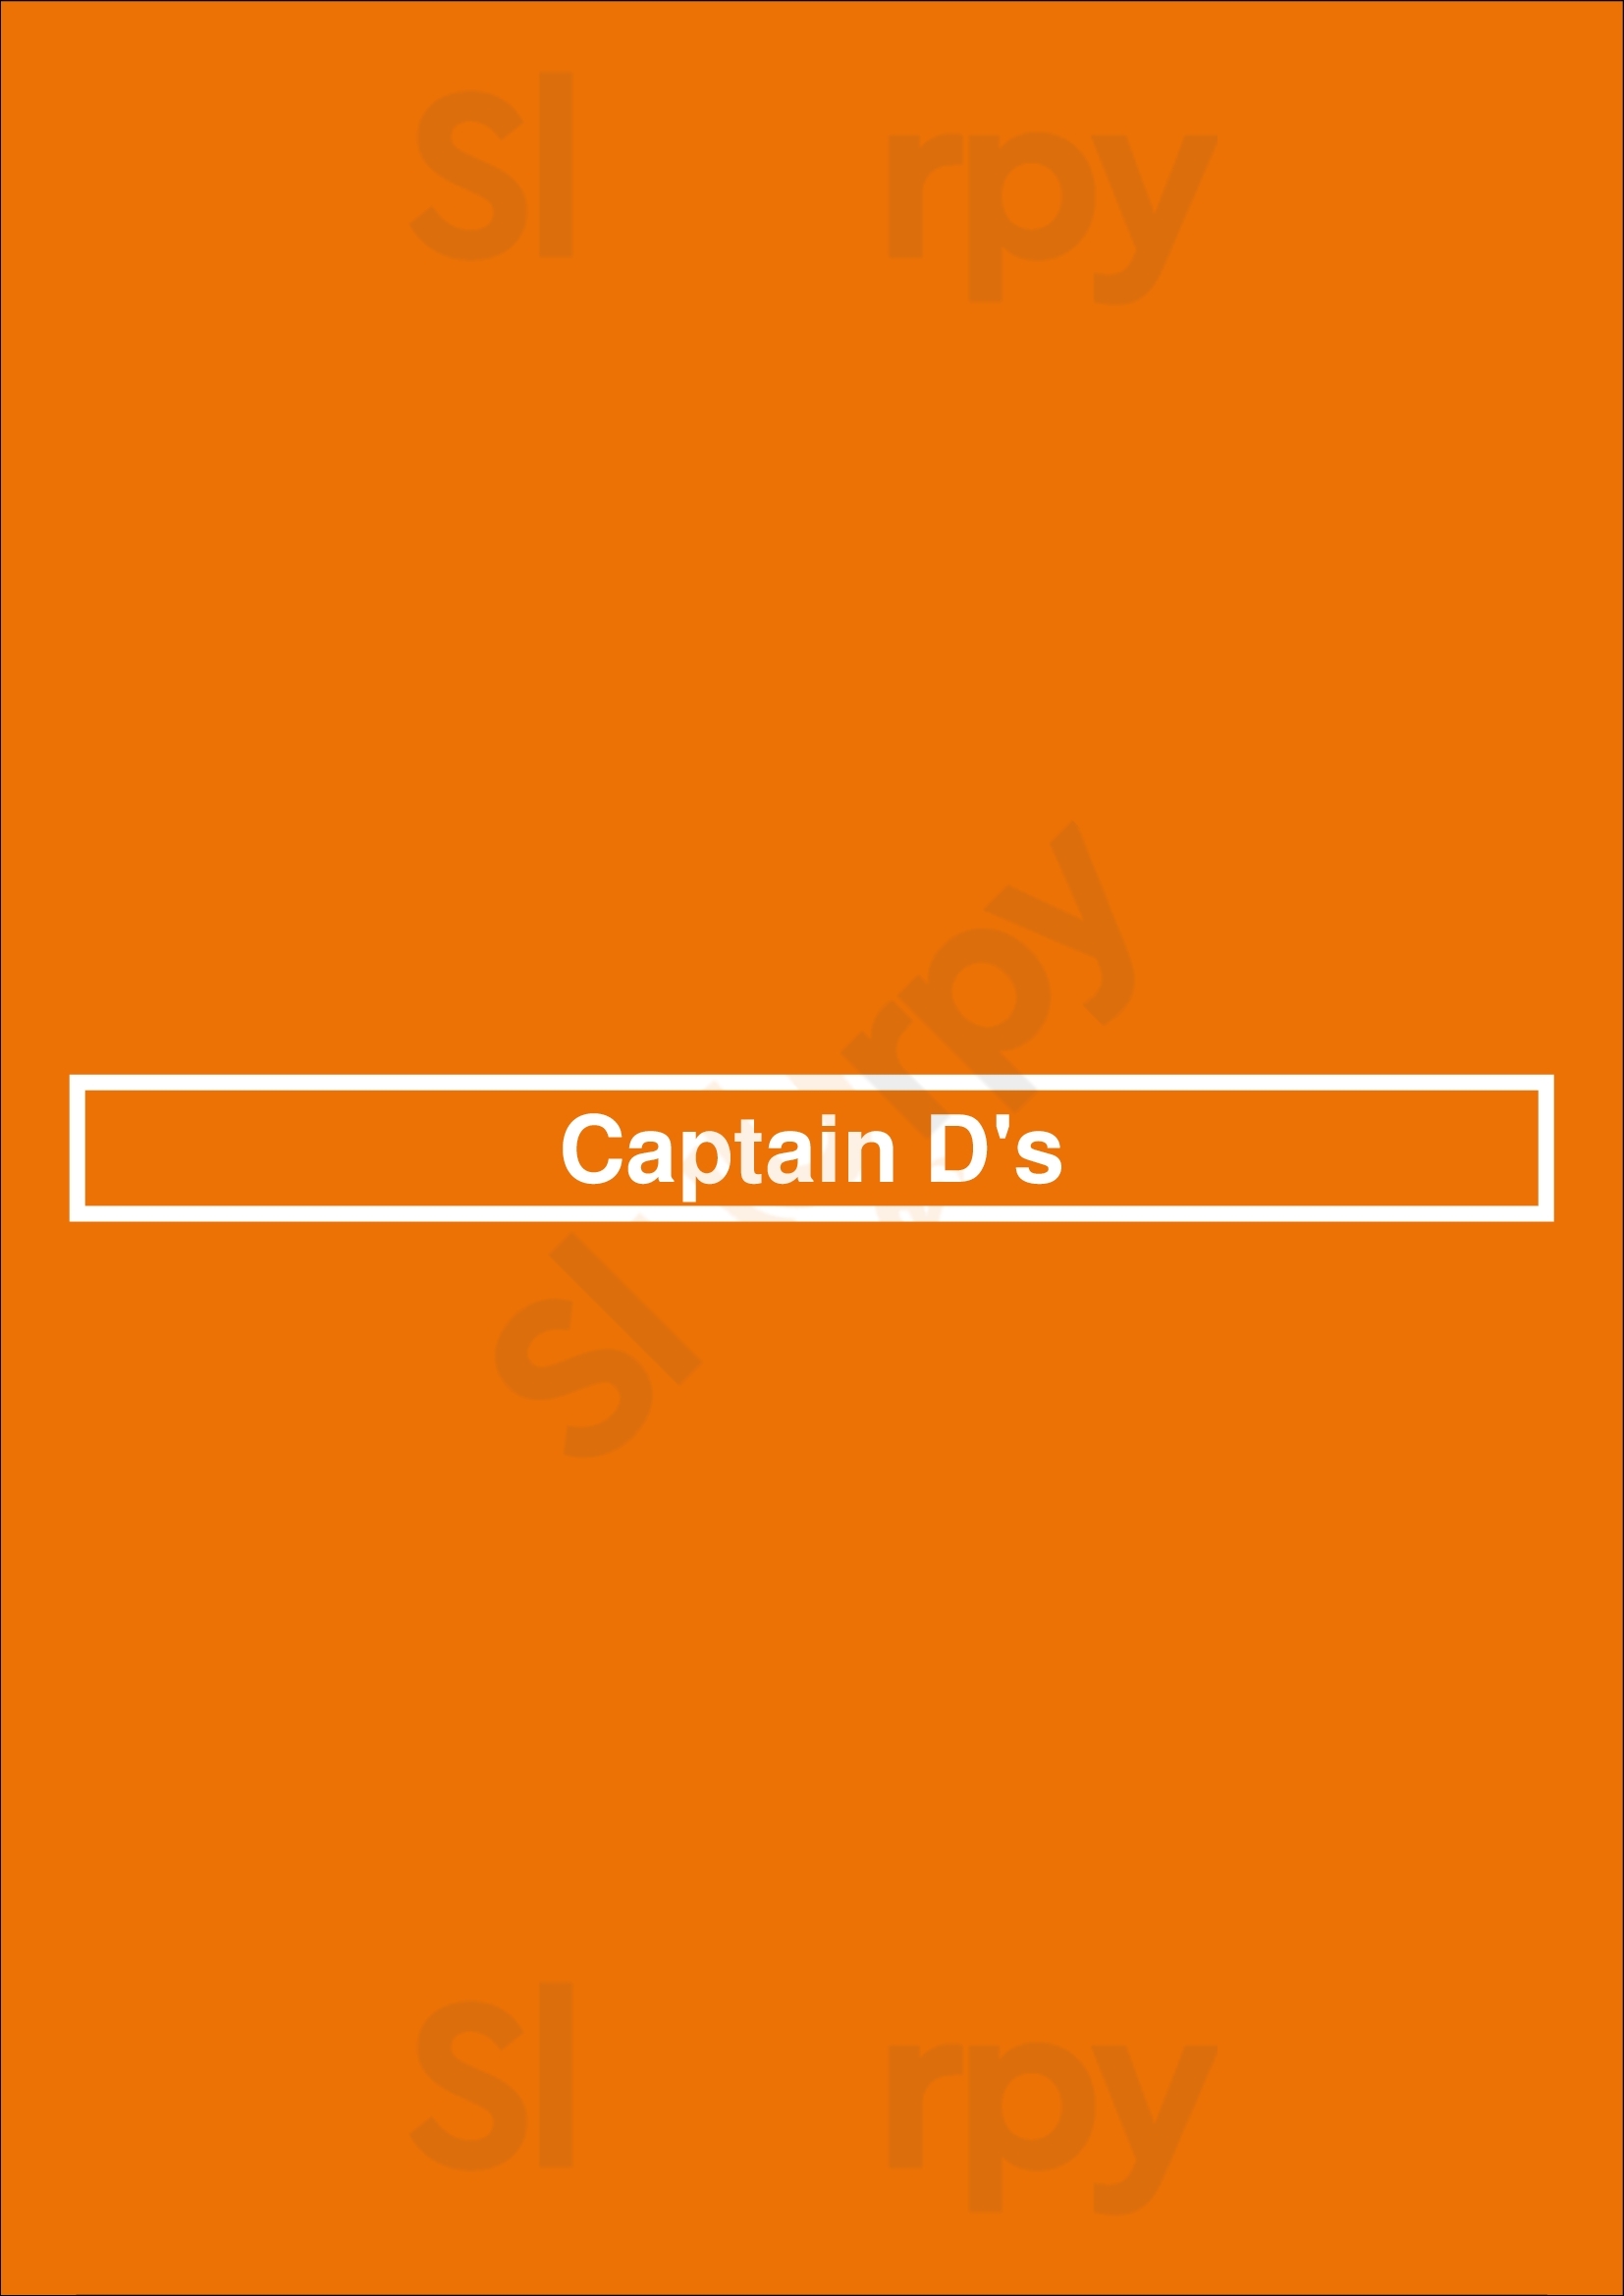 Captain D's Lexington Menu - 1